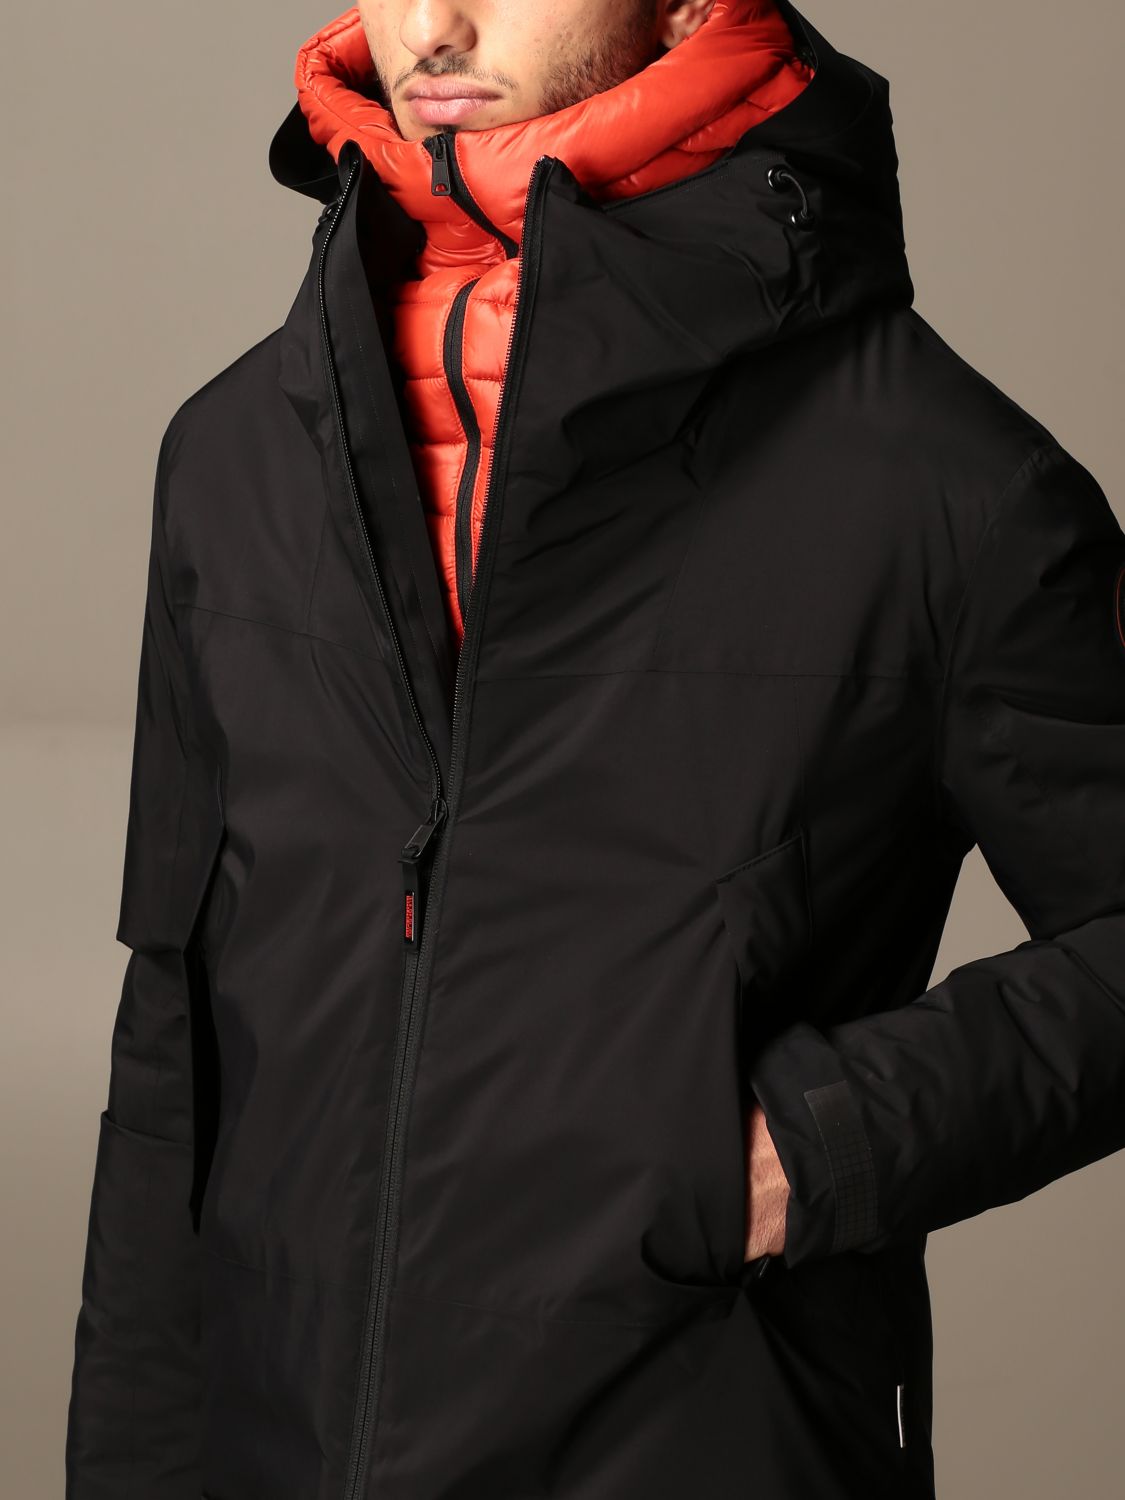 Outlet: s jacket with hood - Black | Napapijri NP0A4ER30411 online on